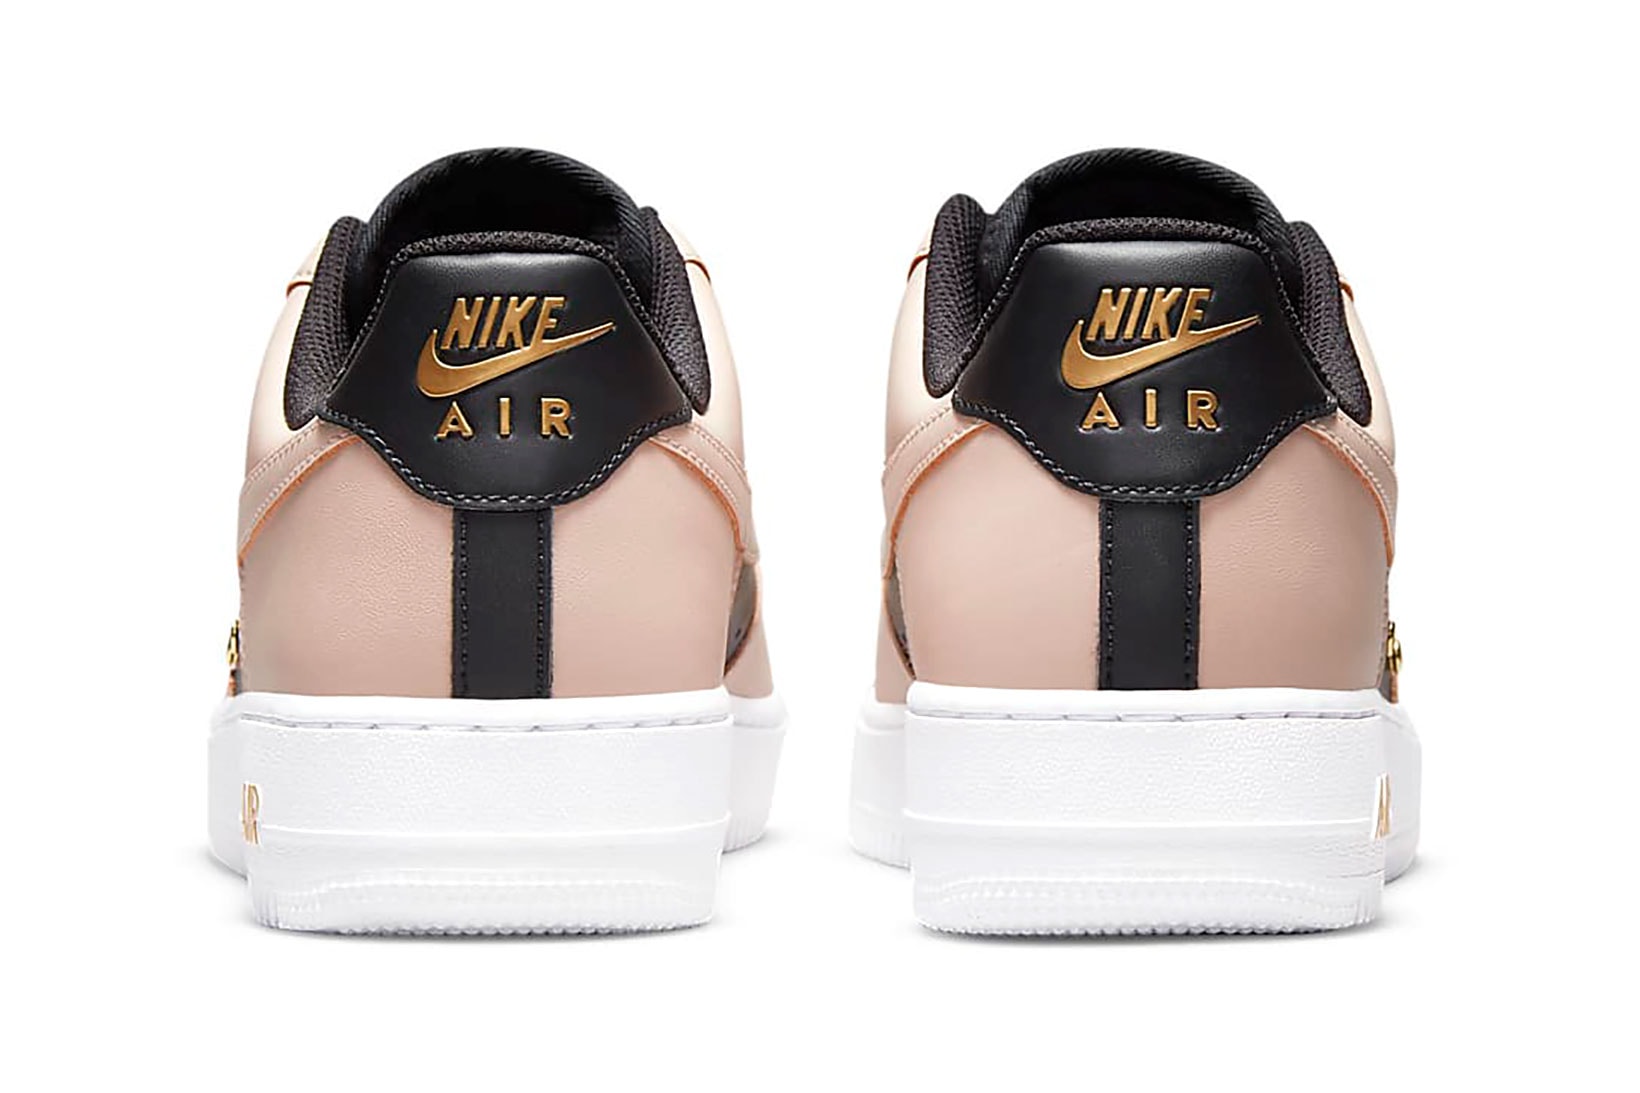 Nike Air Force 1 AF1 Particle Beige Tan Black Gold White Sneakers Shoes Kicks Footwear Heel